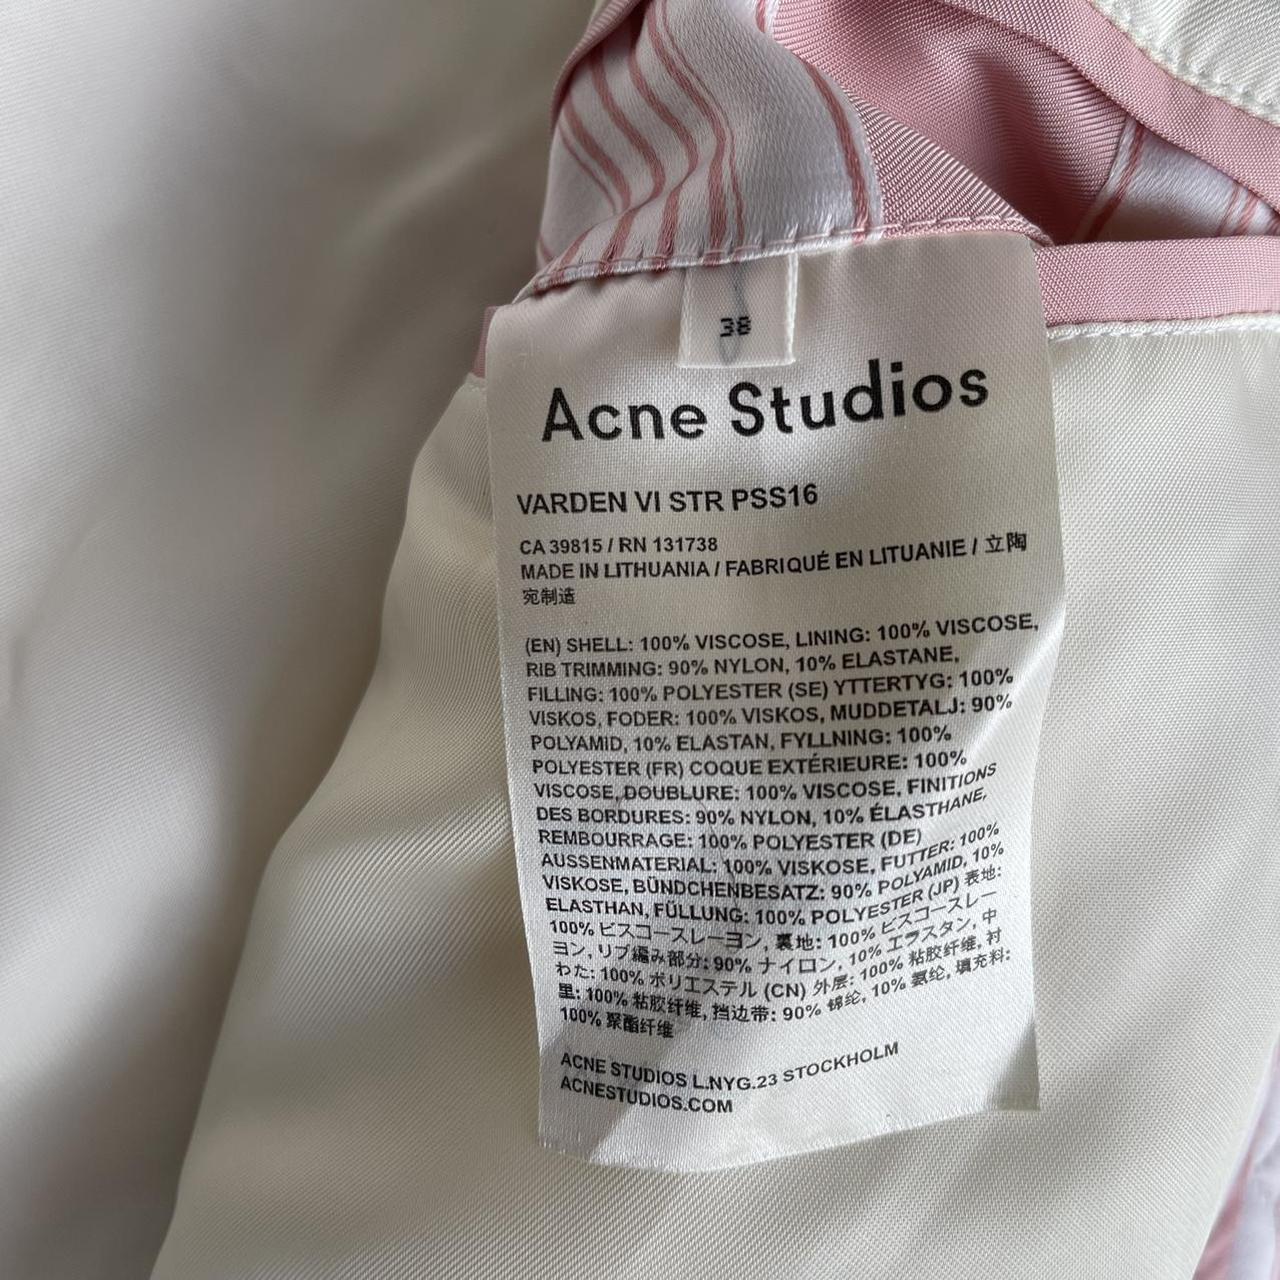 Acne Studios Varden VI STR bomber jacket pink and... - Depop